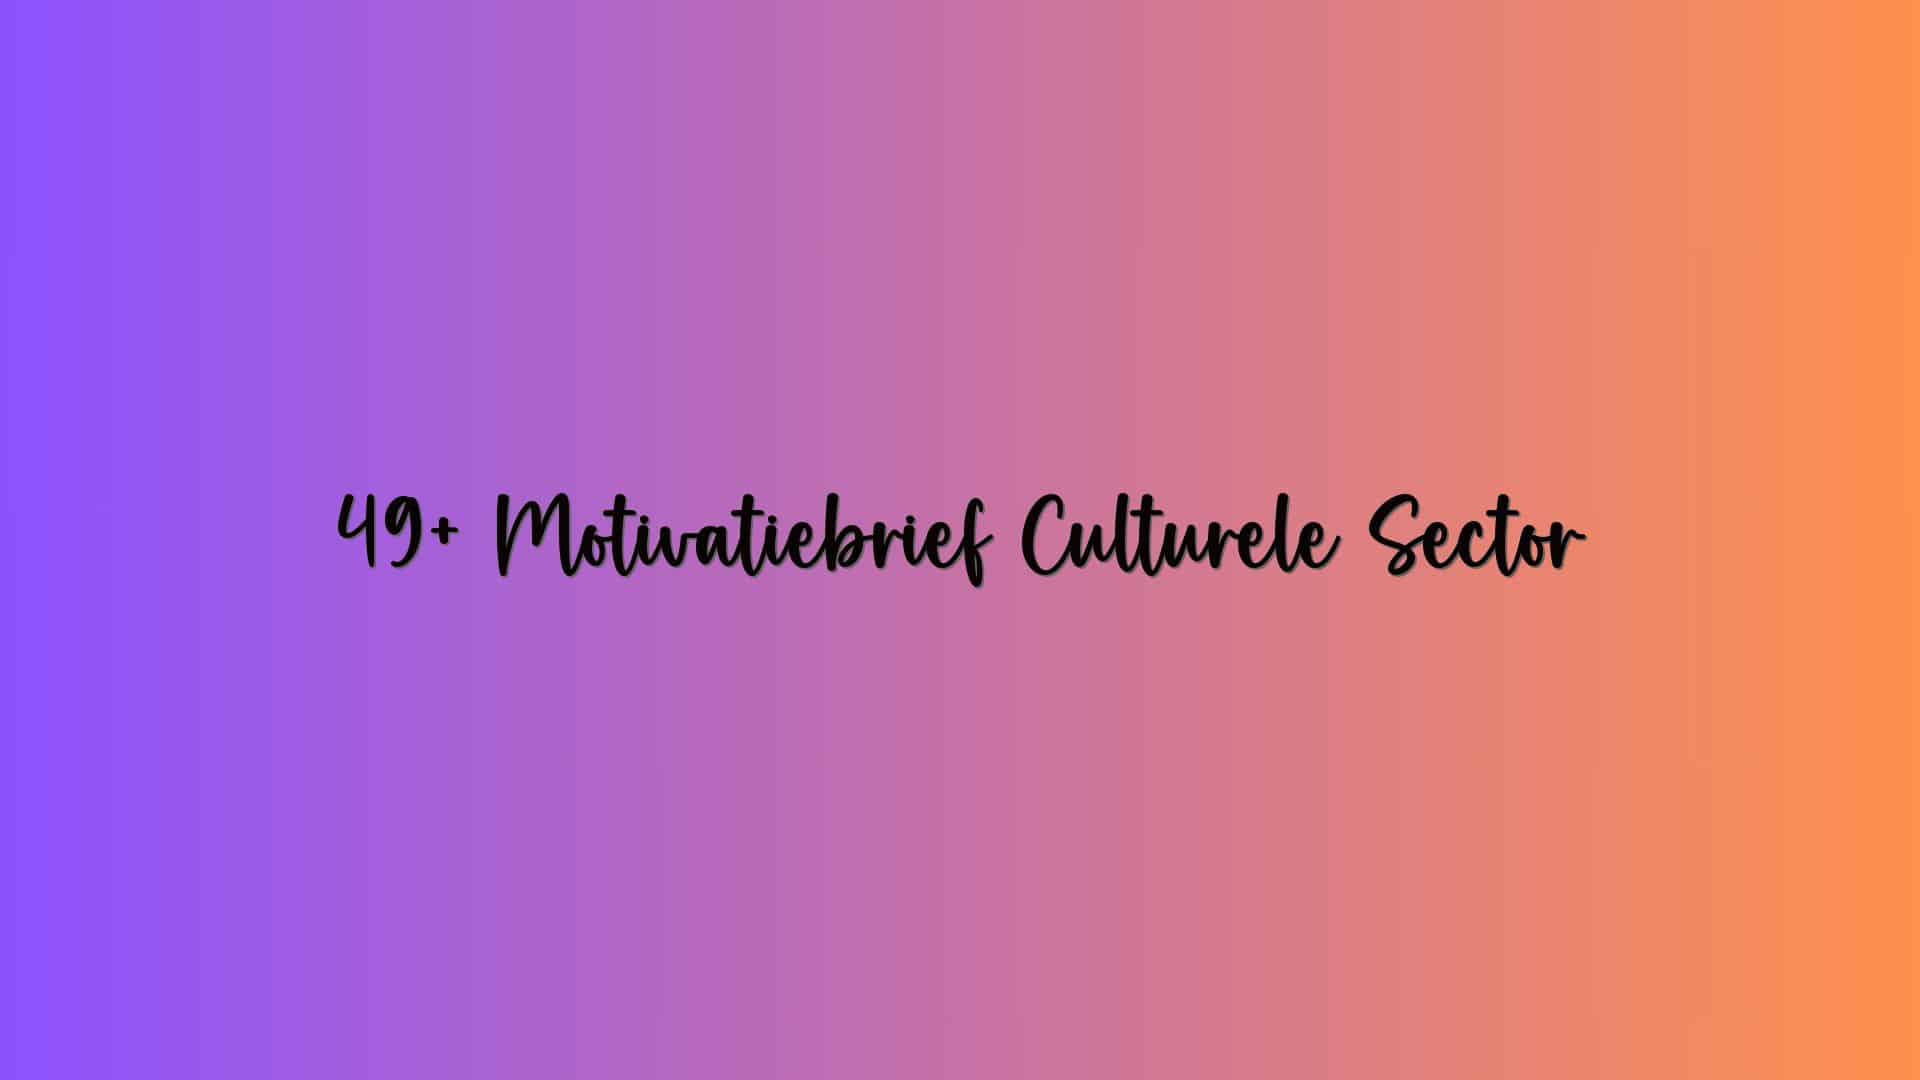 49+ Motivatiebrief Culturele Sector